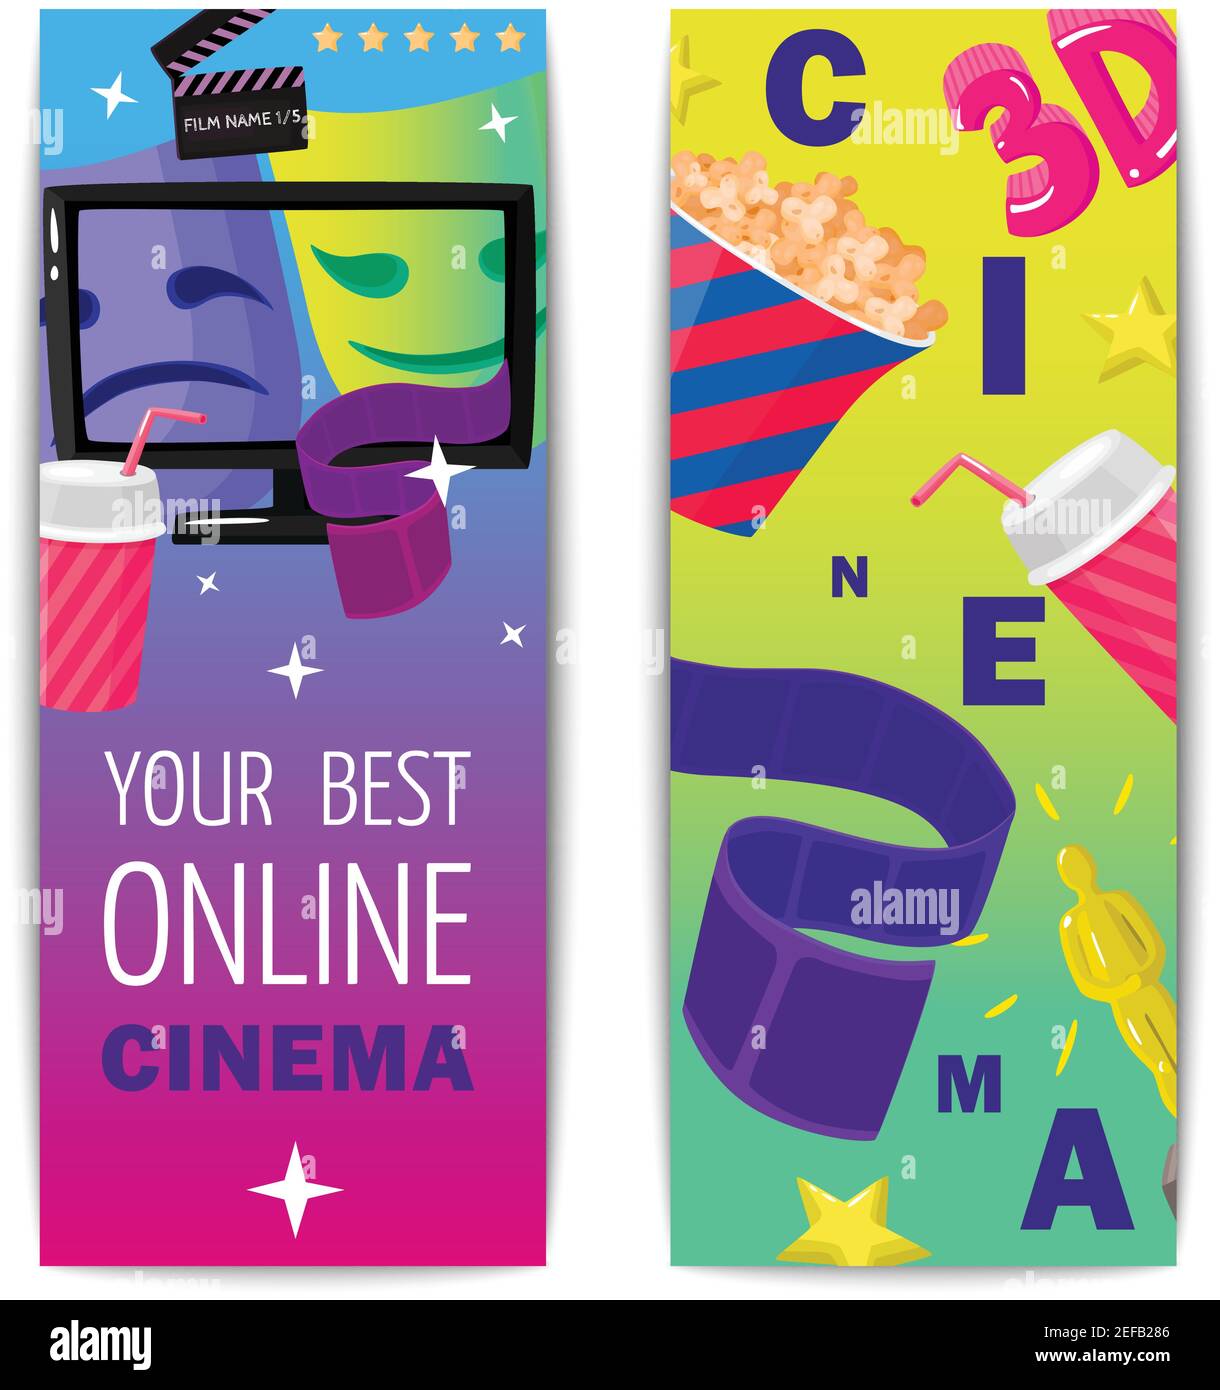 Cinema due striscioni verticali isolati con popcorn 3D figurine premio ripresa delle immagini online visualizzazione vettoriale piatta Illustrazione Vettoriale